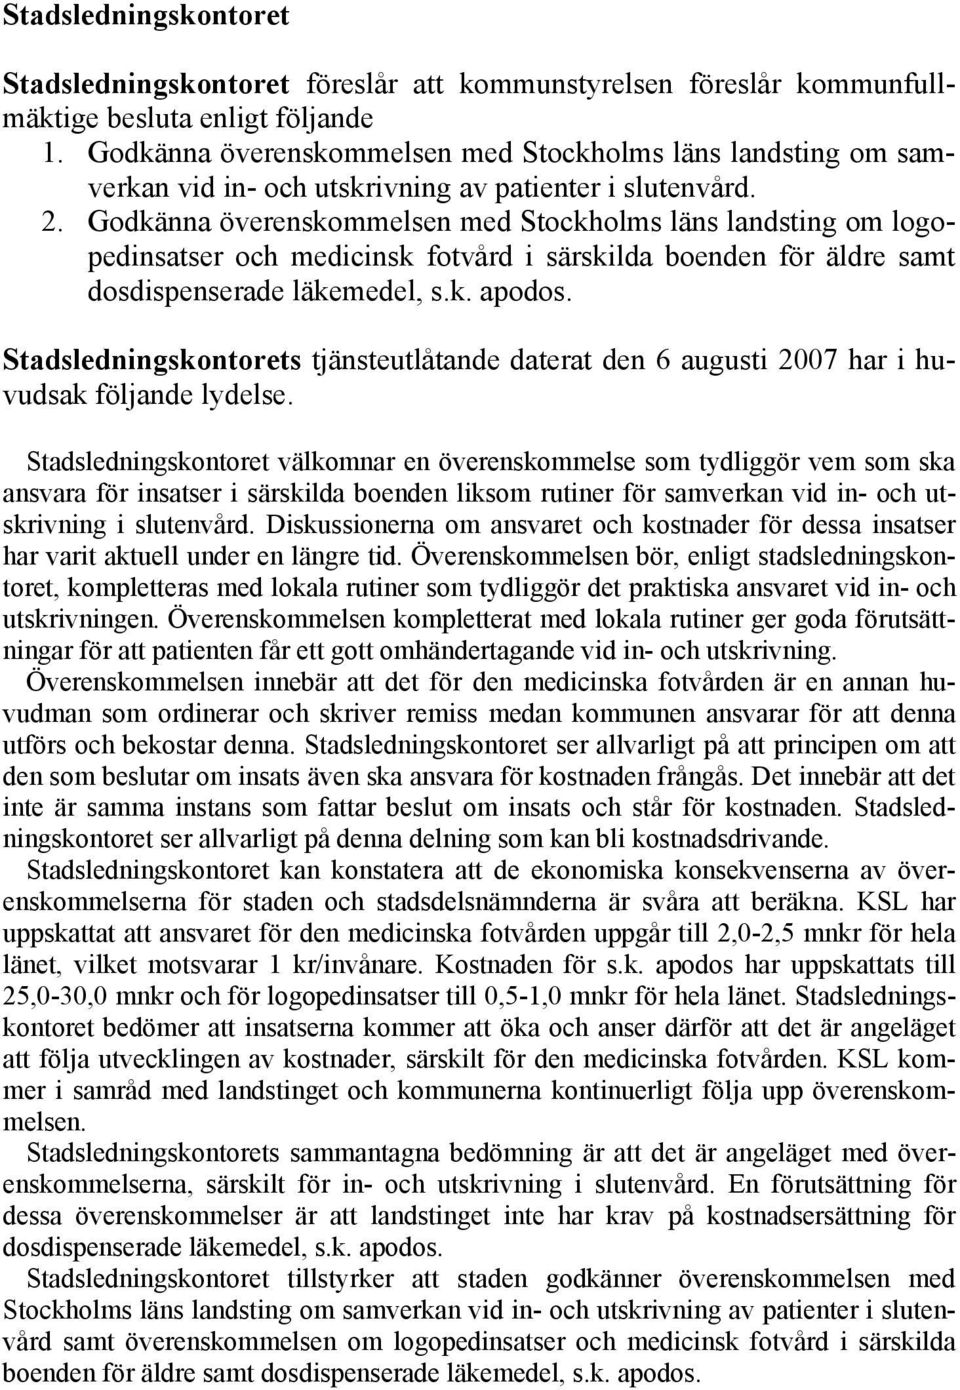 Godkänna överenskommelsen med Stockholms läns landsting om logopedinsatser och medicinsk fotvård i särskilda boenden för äldre samt dosdispenserade läkemedel, s.k. apodos.